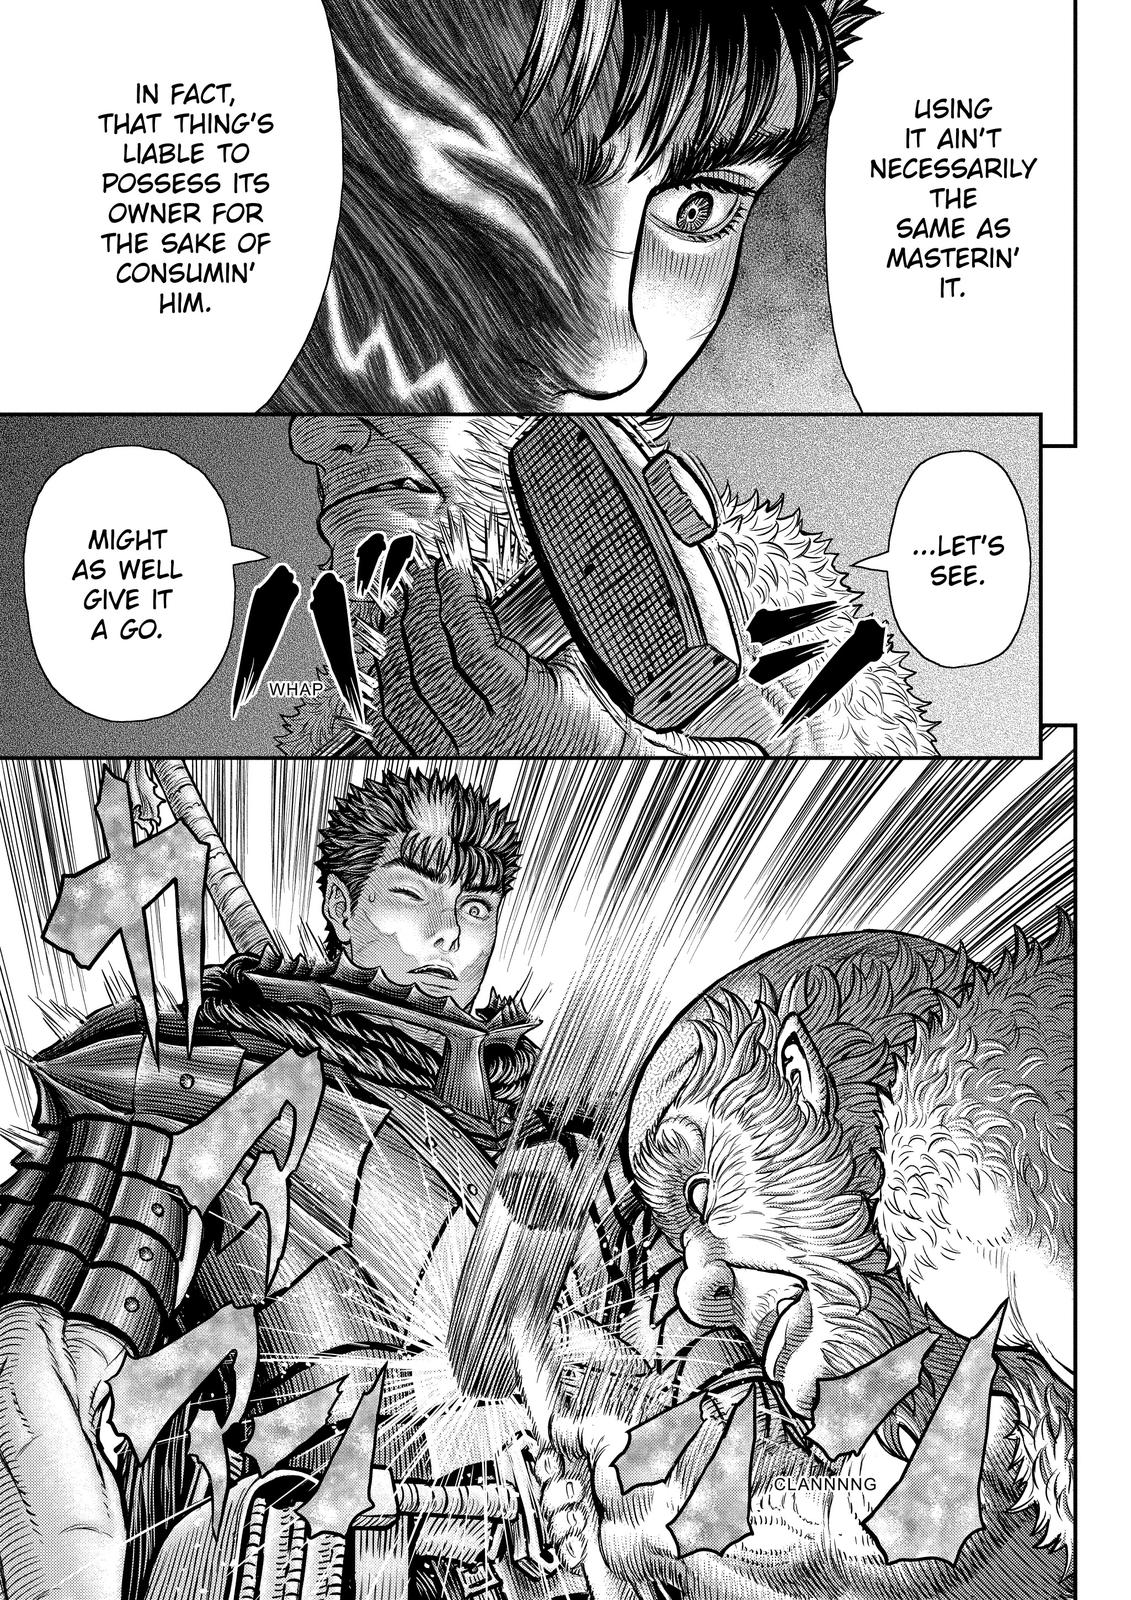 Berserk Manga Chapter 361 image 18